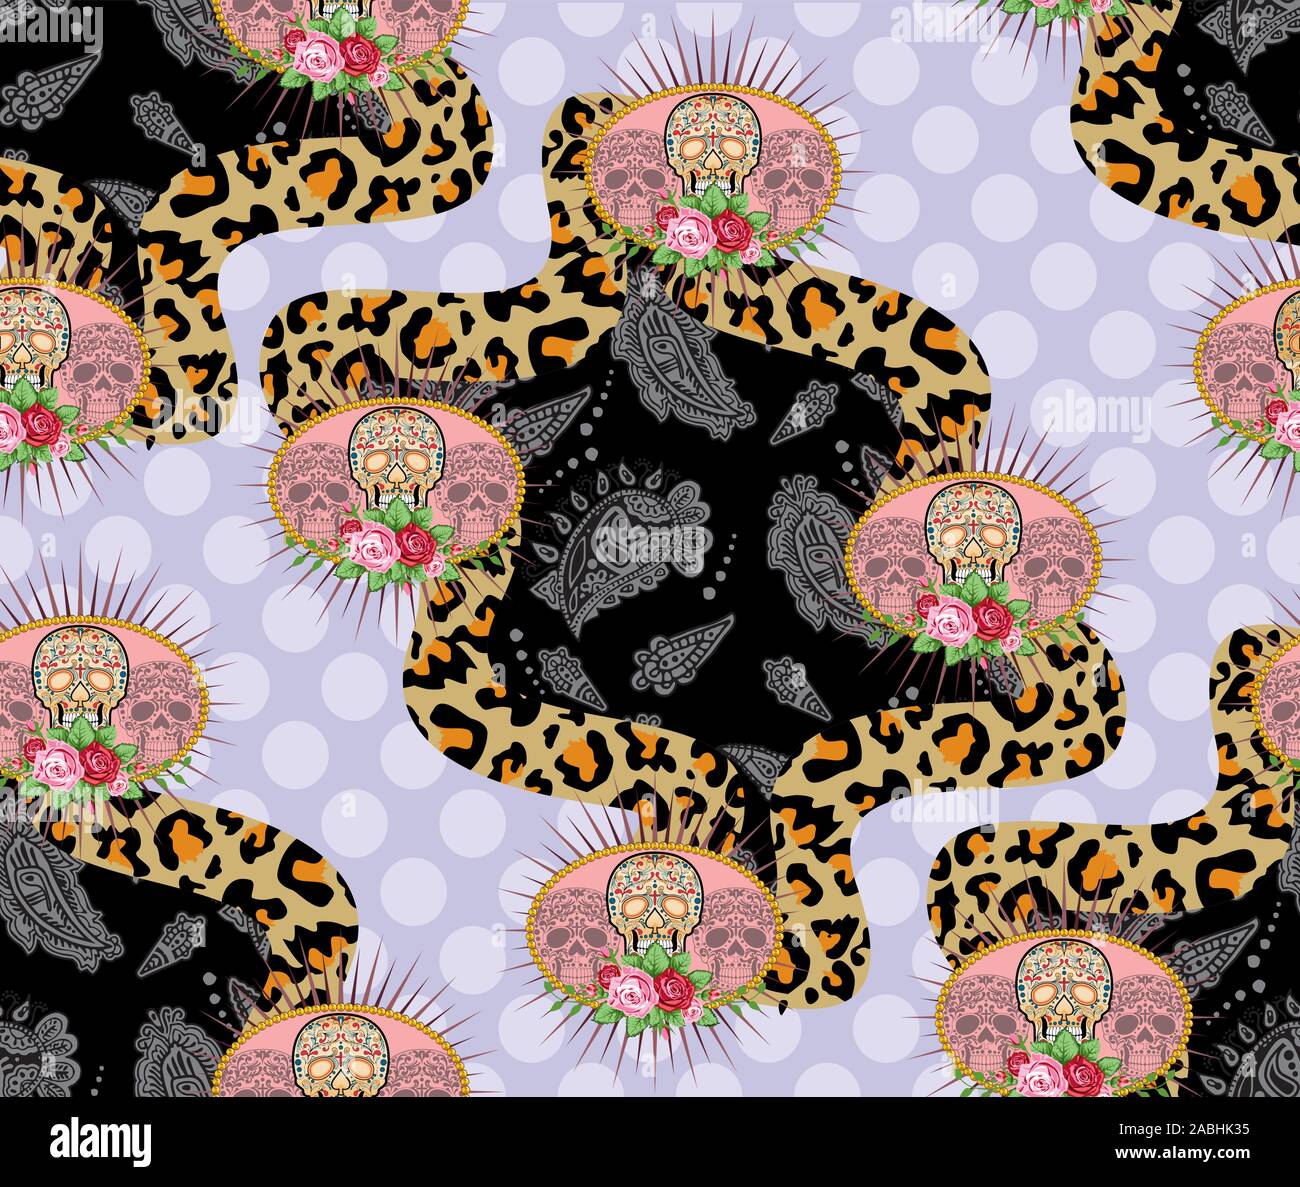 Monochrome Paisley Muster mit traditionellen Schädel, Leopard Haut Textur, Polka Dots Hintergrund. - Vektor Stock Vektor